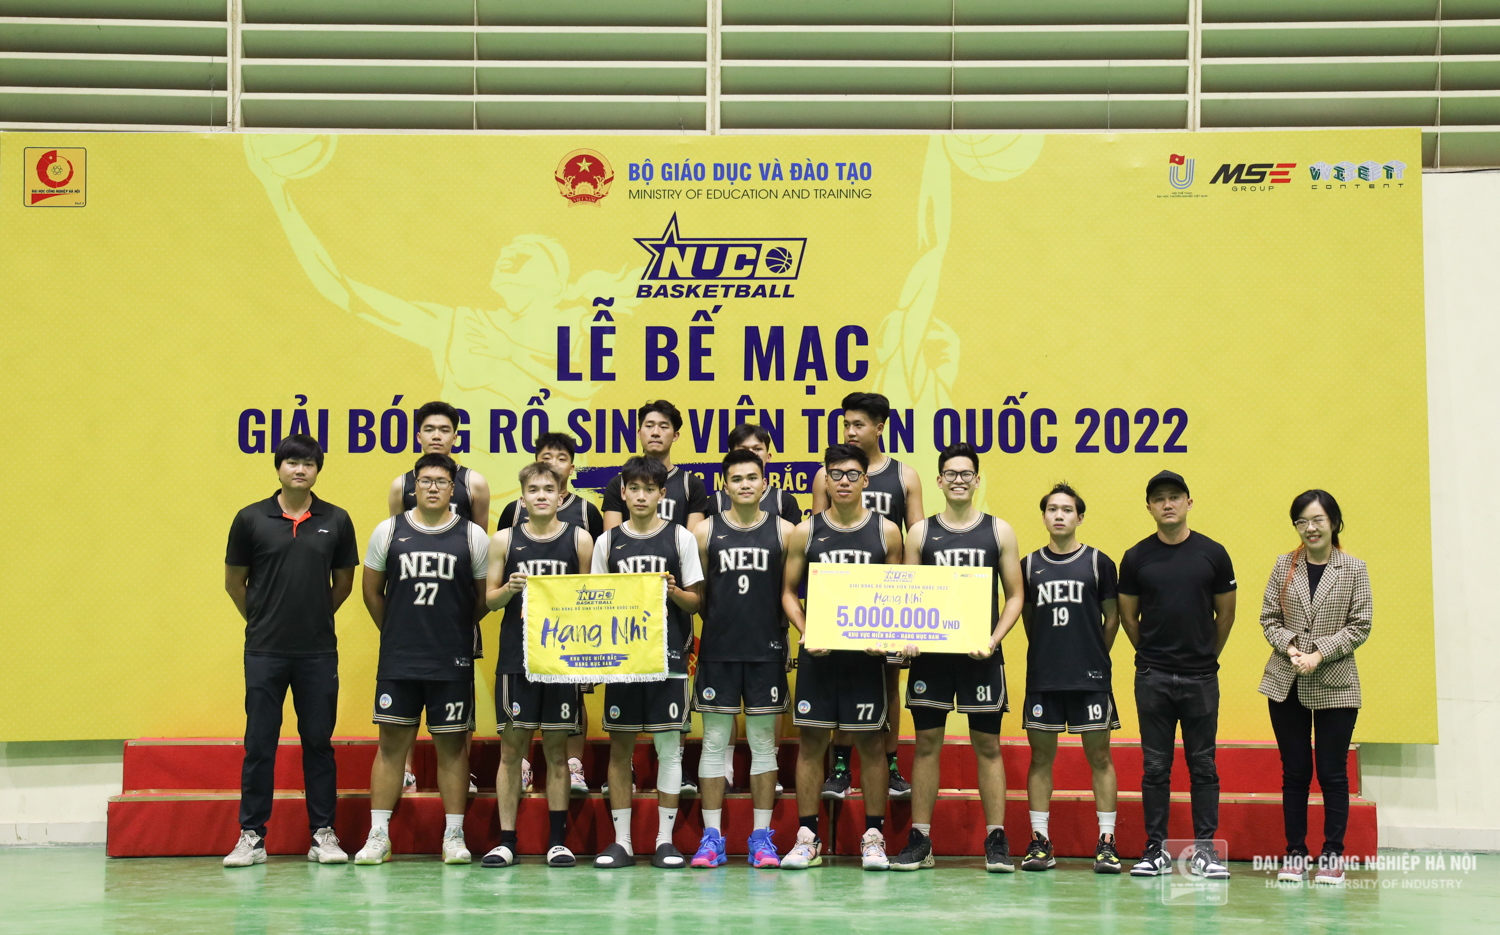 Tổng kết Giải bóng rổ sinh viên toàn quốc 2022 khu vực Miền Bắc